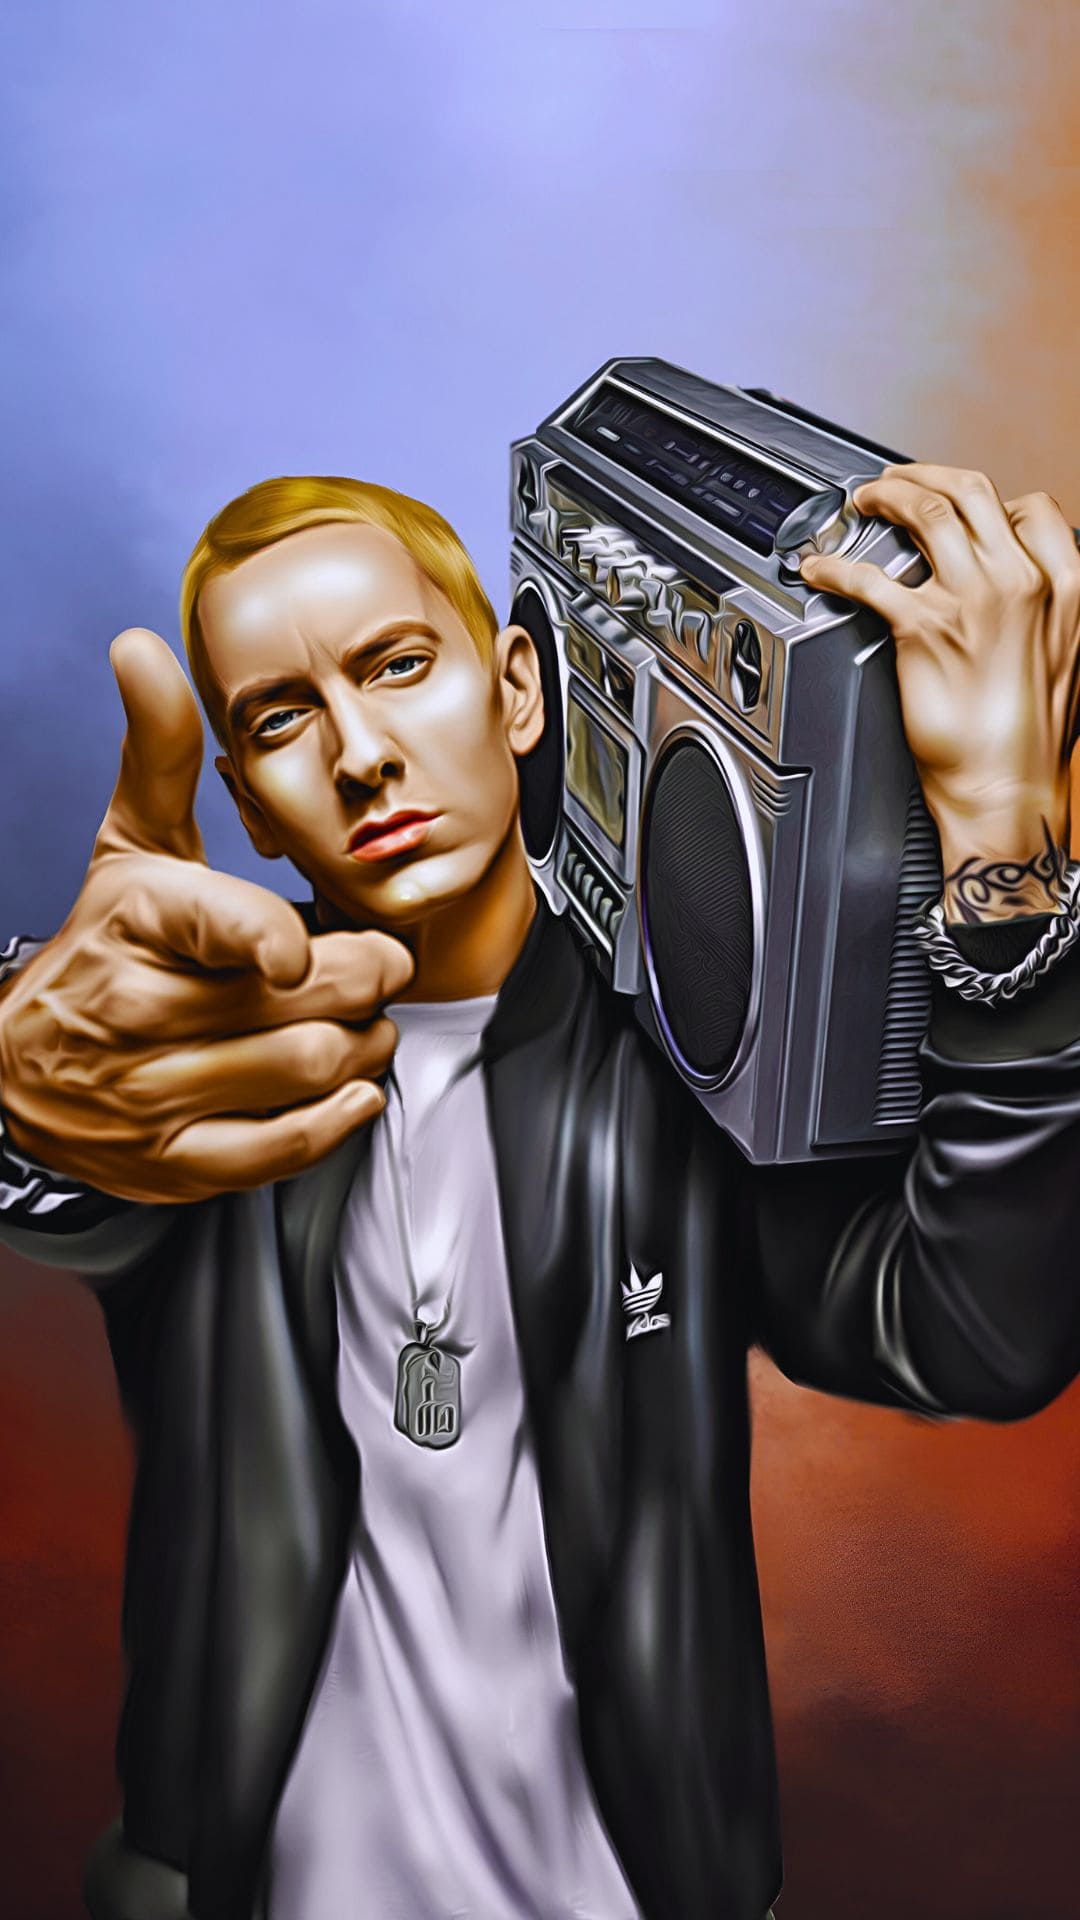 Eminem Wallpaper Cartoon